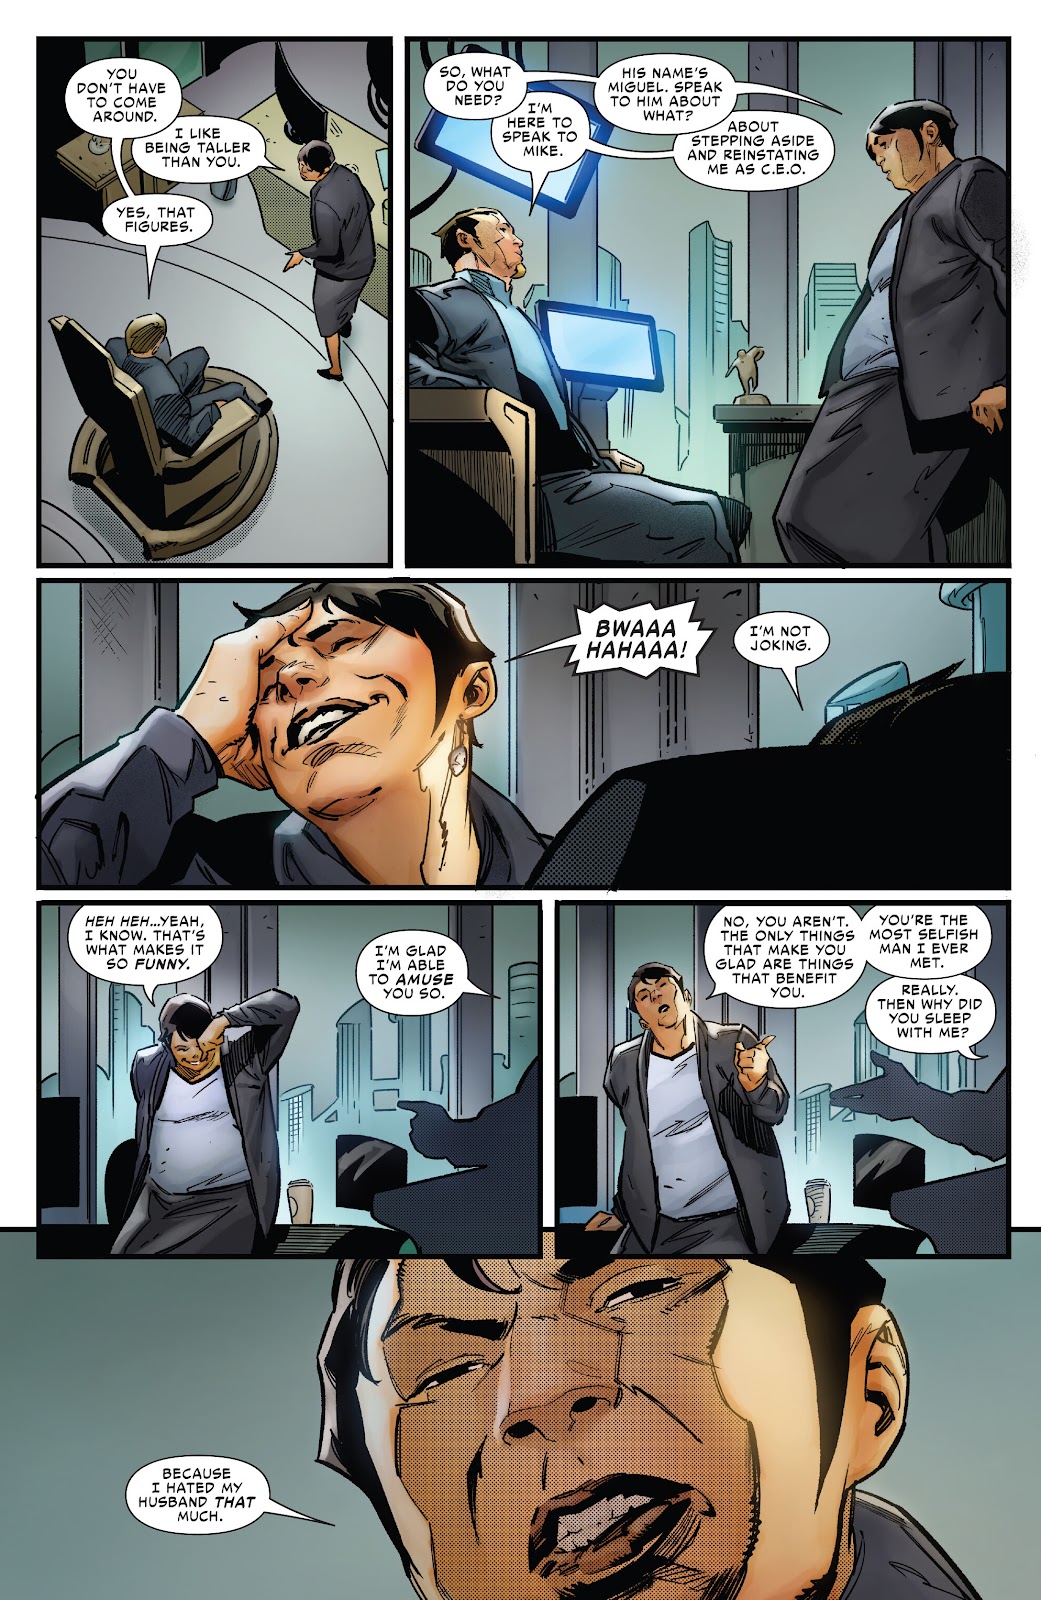 Symbiote Spider-Man 2099 issue 2 - Page 14